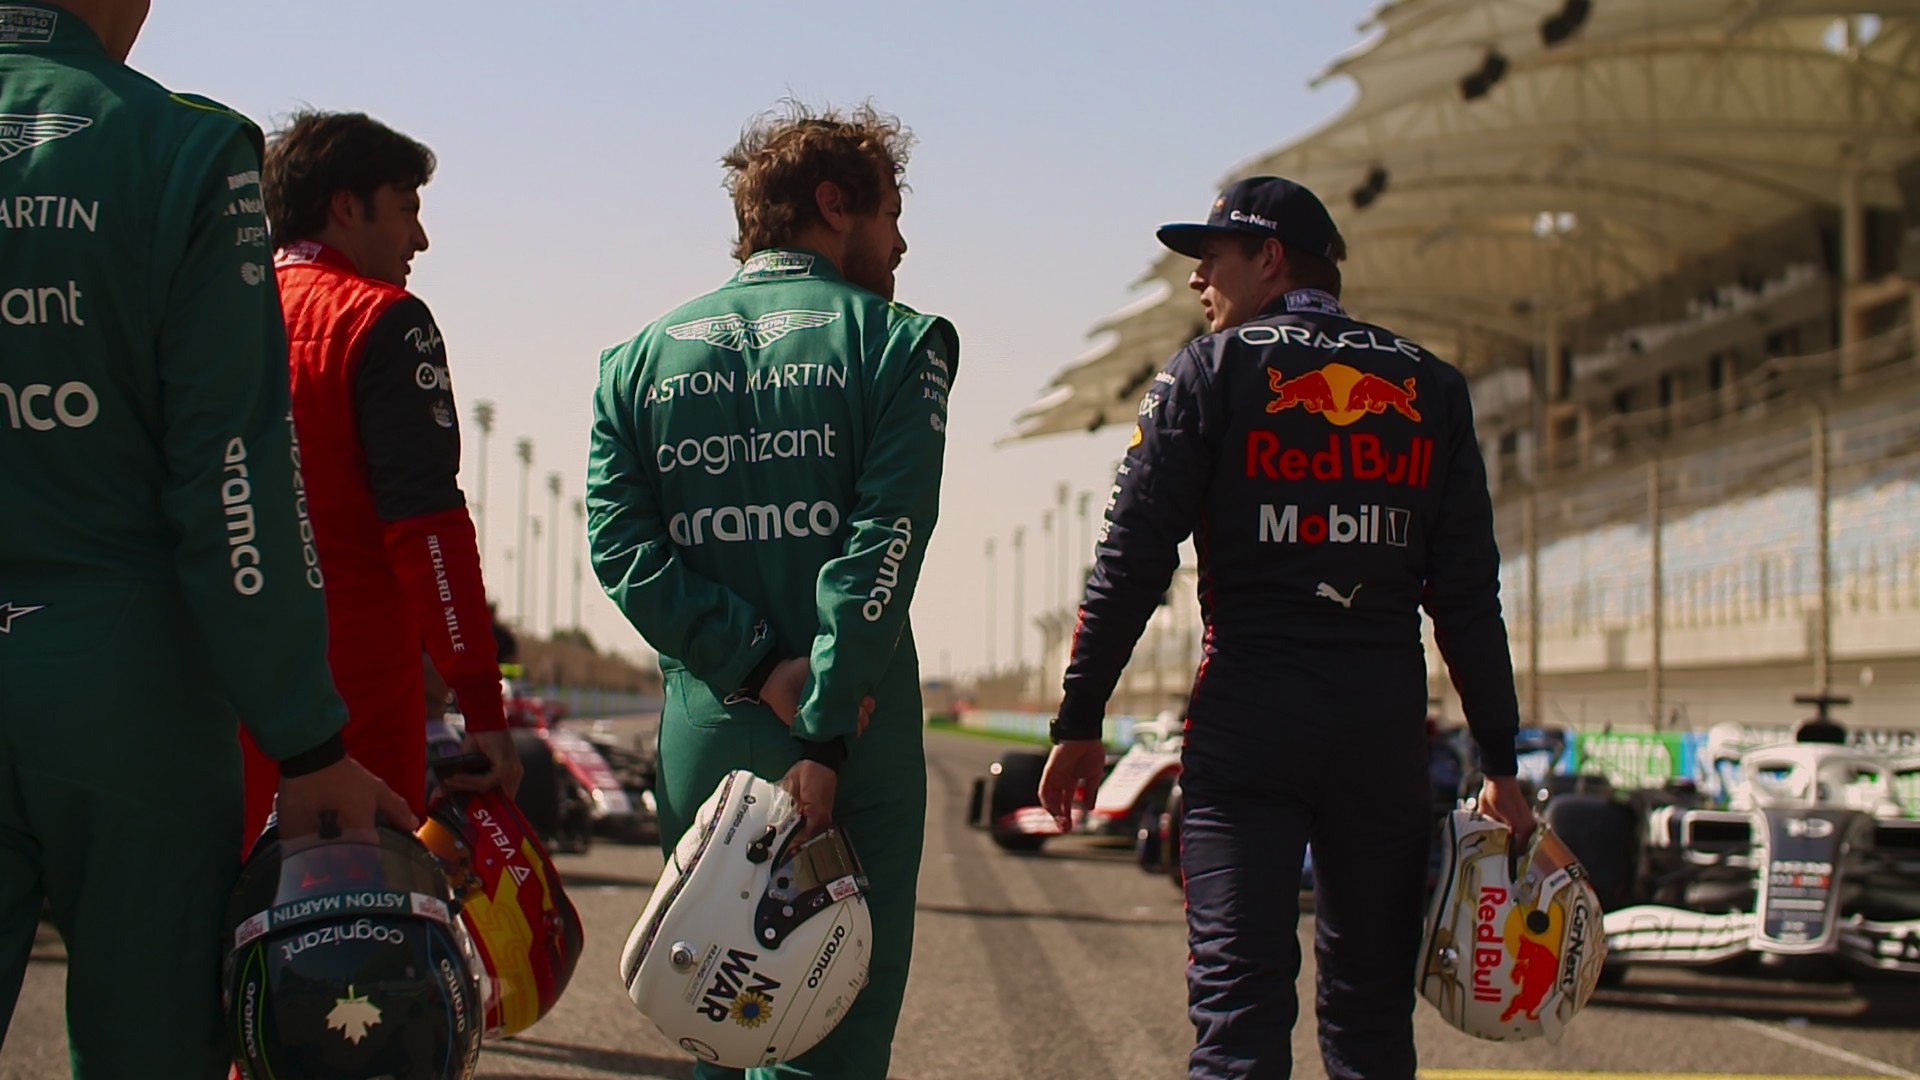 Vários pilotos, incluindo Max Verstappen, da equipe Red Bull, caminham pela pista, segurando seus capacetes, em uma cena da 5ª temporada da Fórmula 1: Drive to Survive.